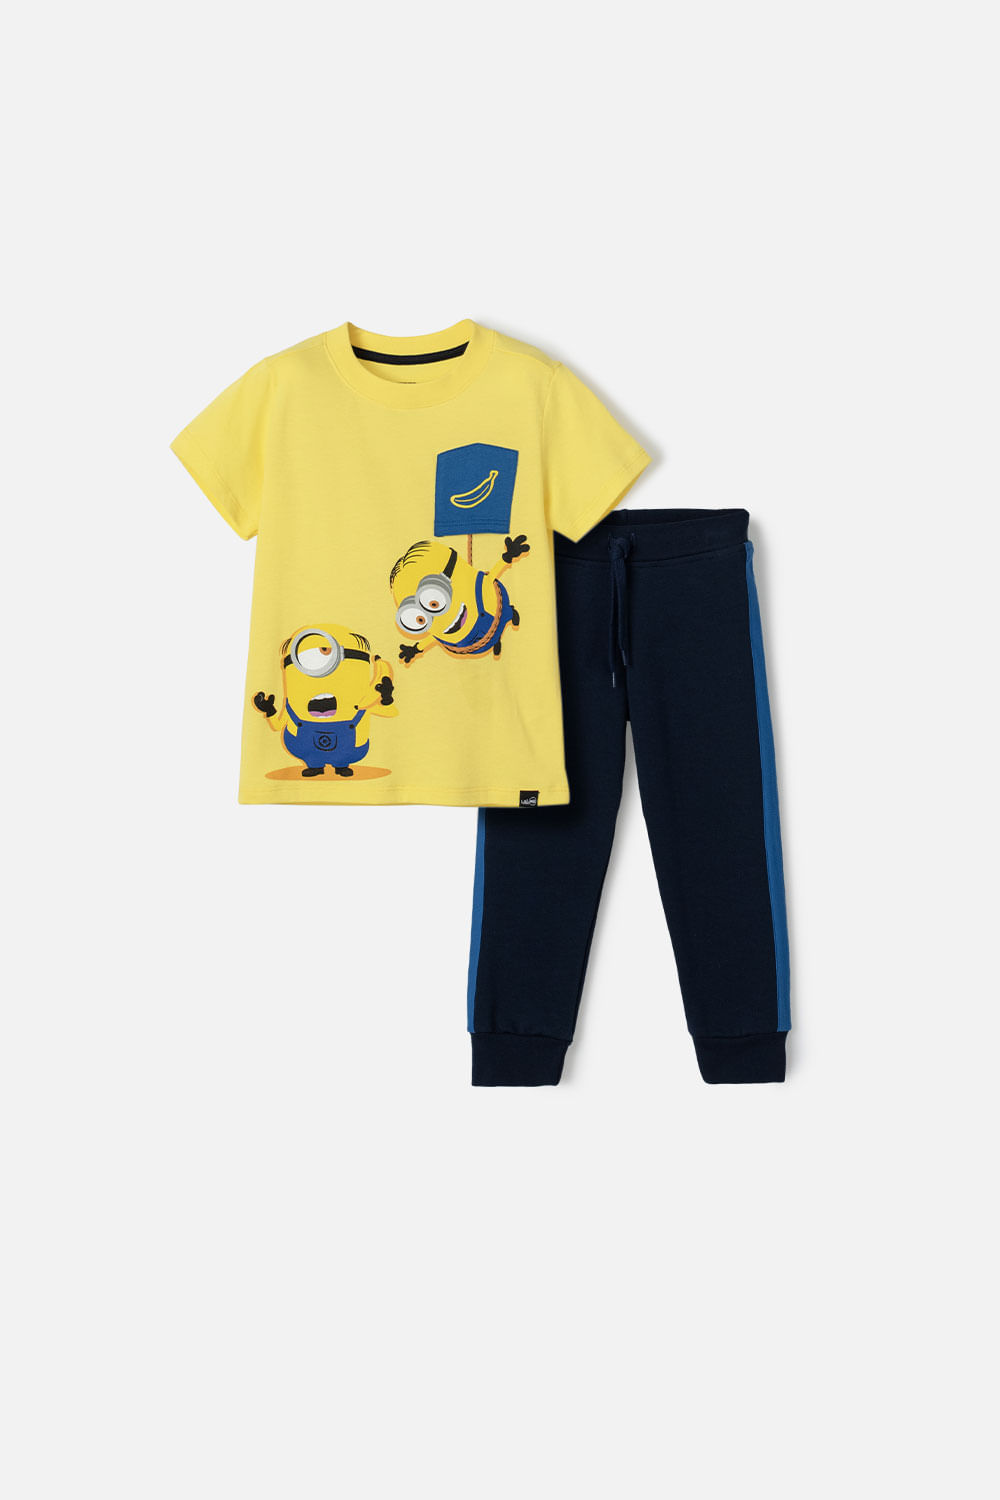 Conjunto de Los Minions amarillo y azul de pantalón largo para niño 2T a 5T 5T-0